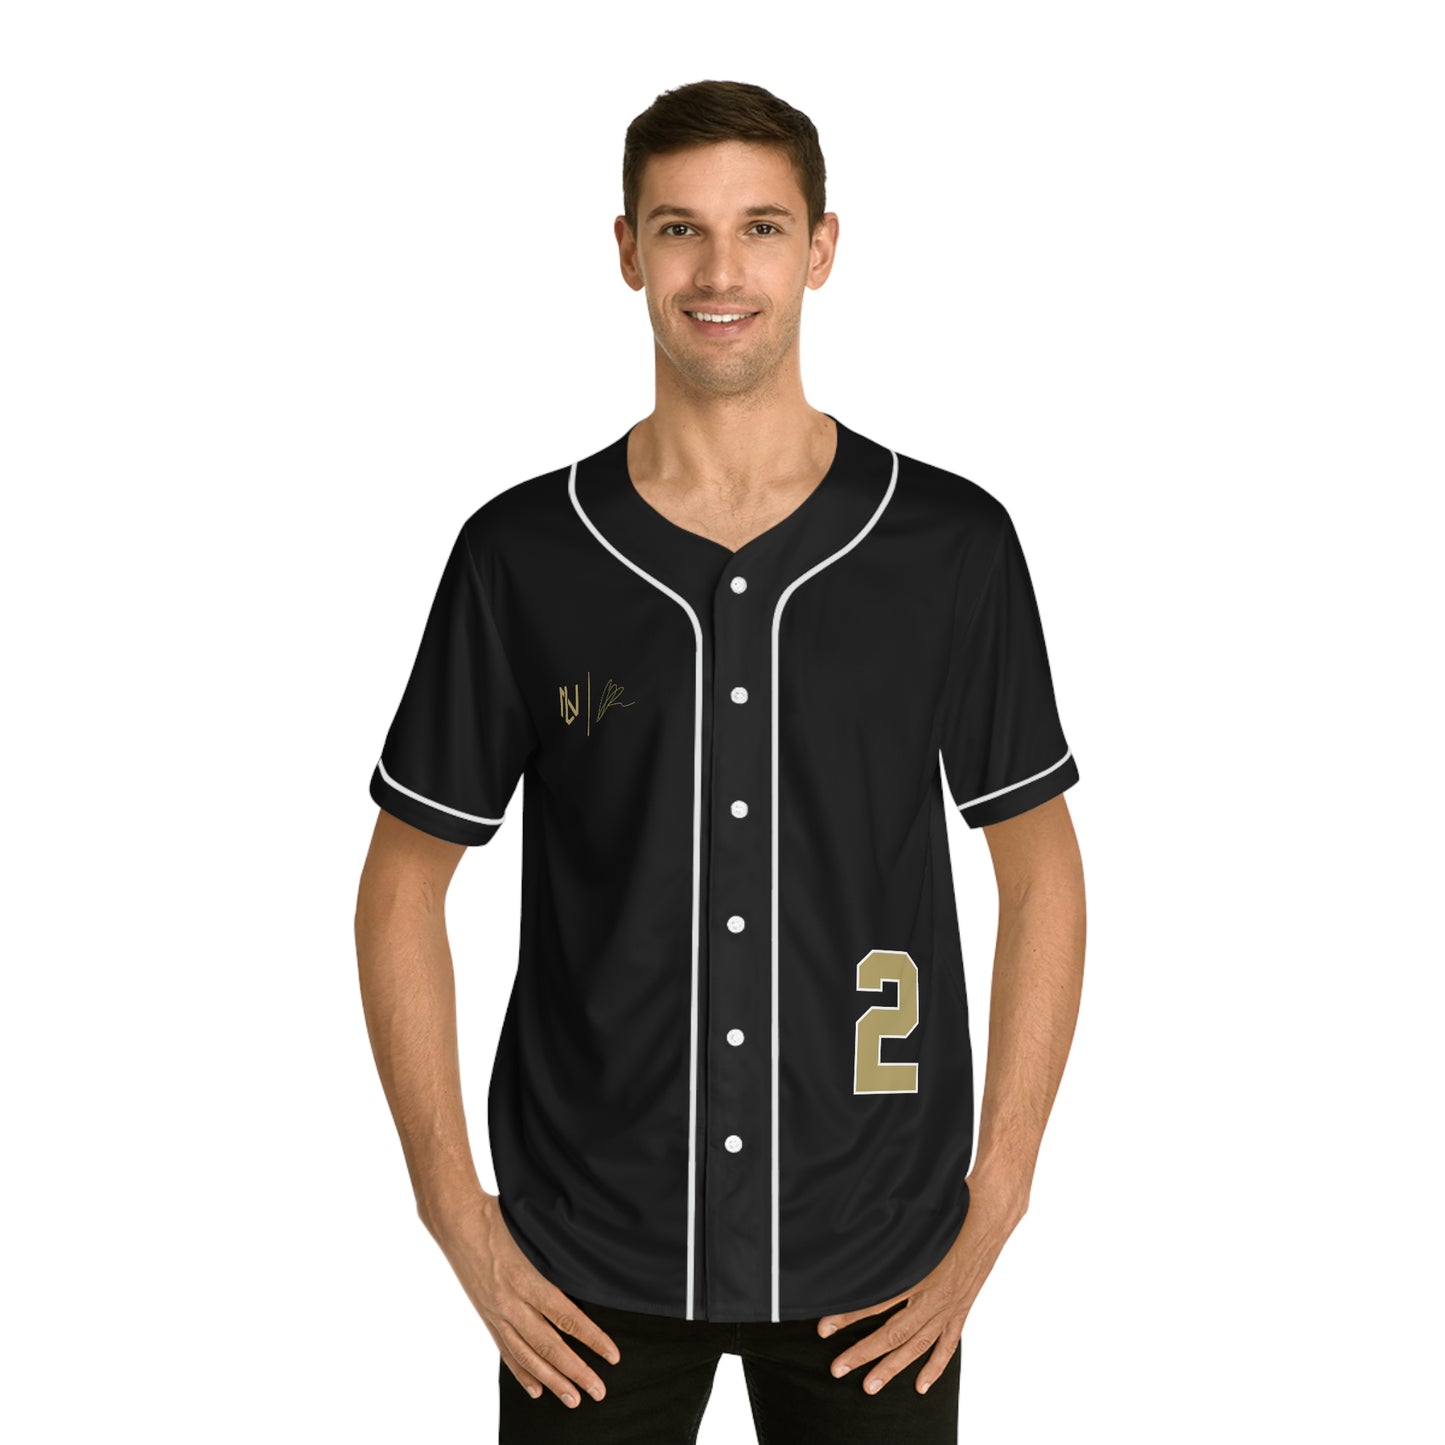 Corey Robinson Baseball Jersey (Black)